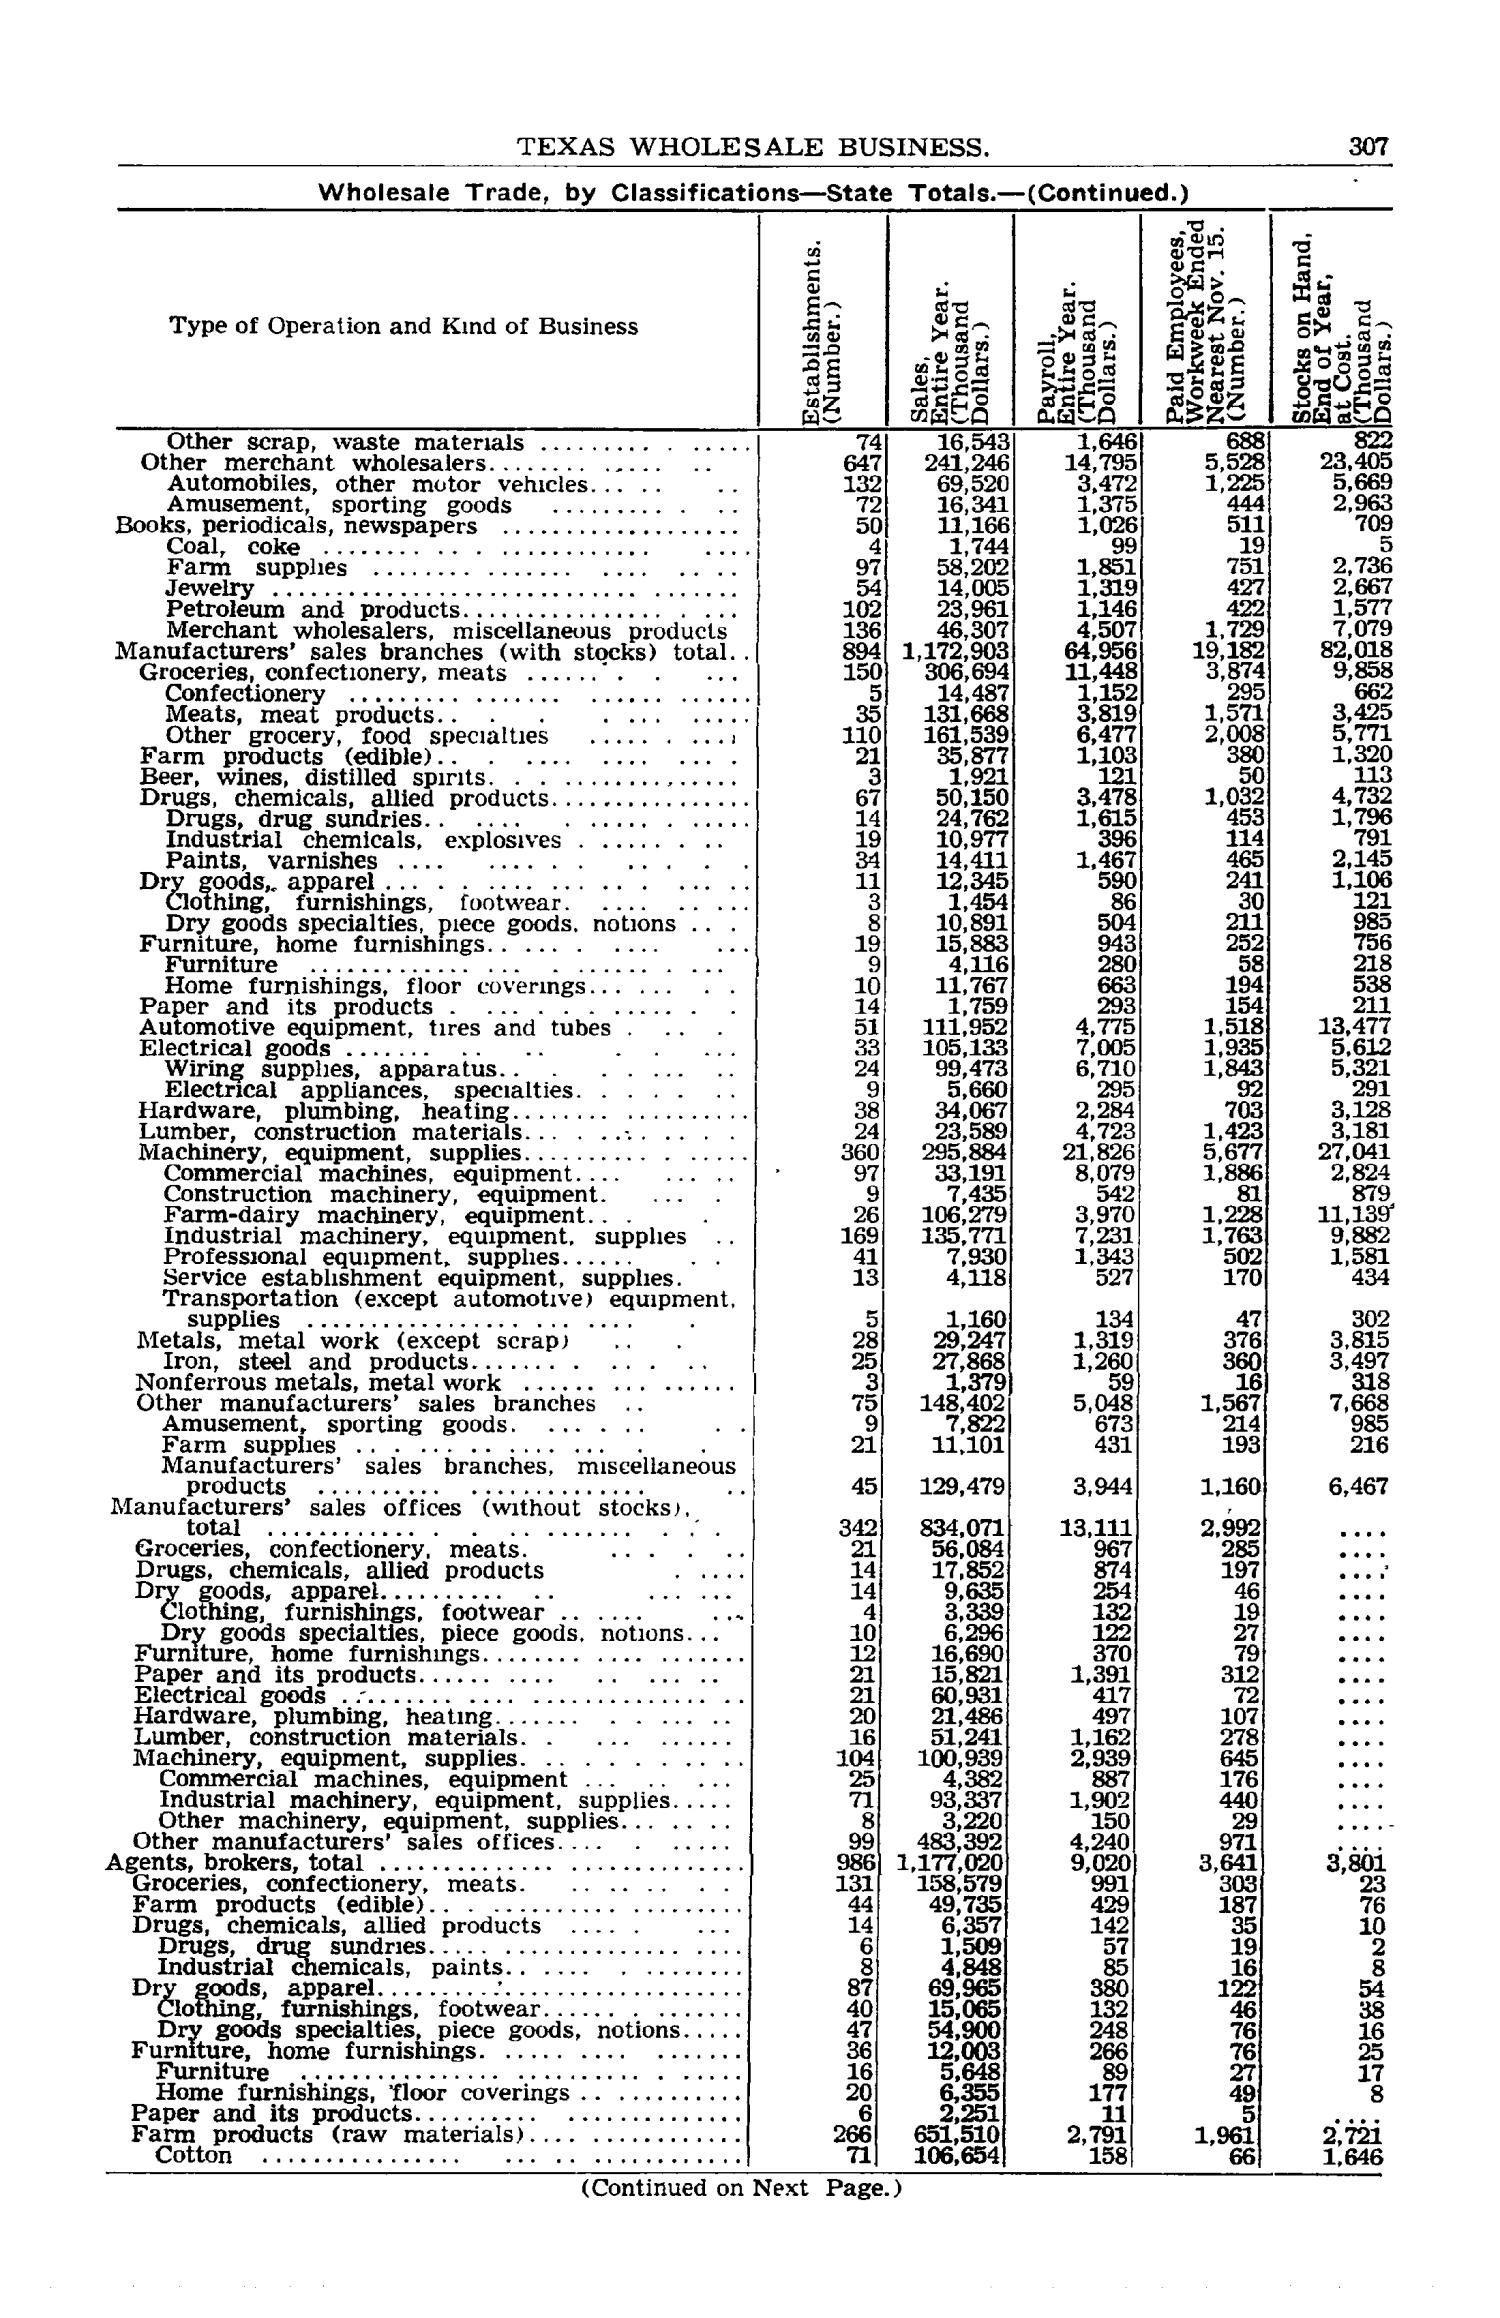 Texas Almanac, 1952-1953
                                                
                                                    307
                                                